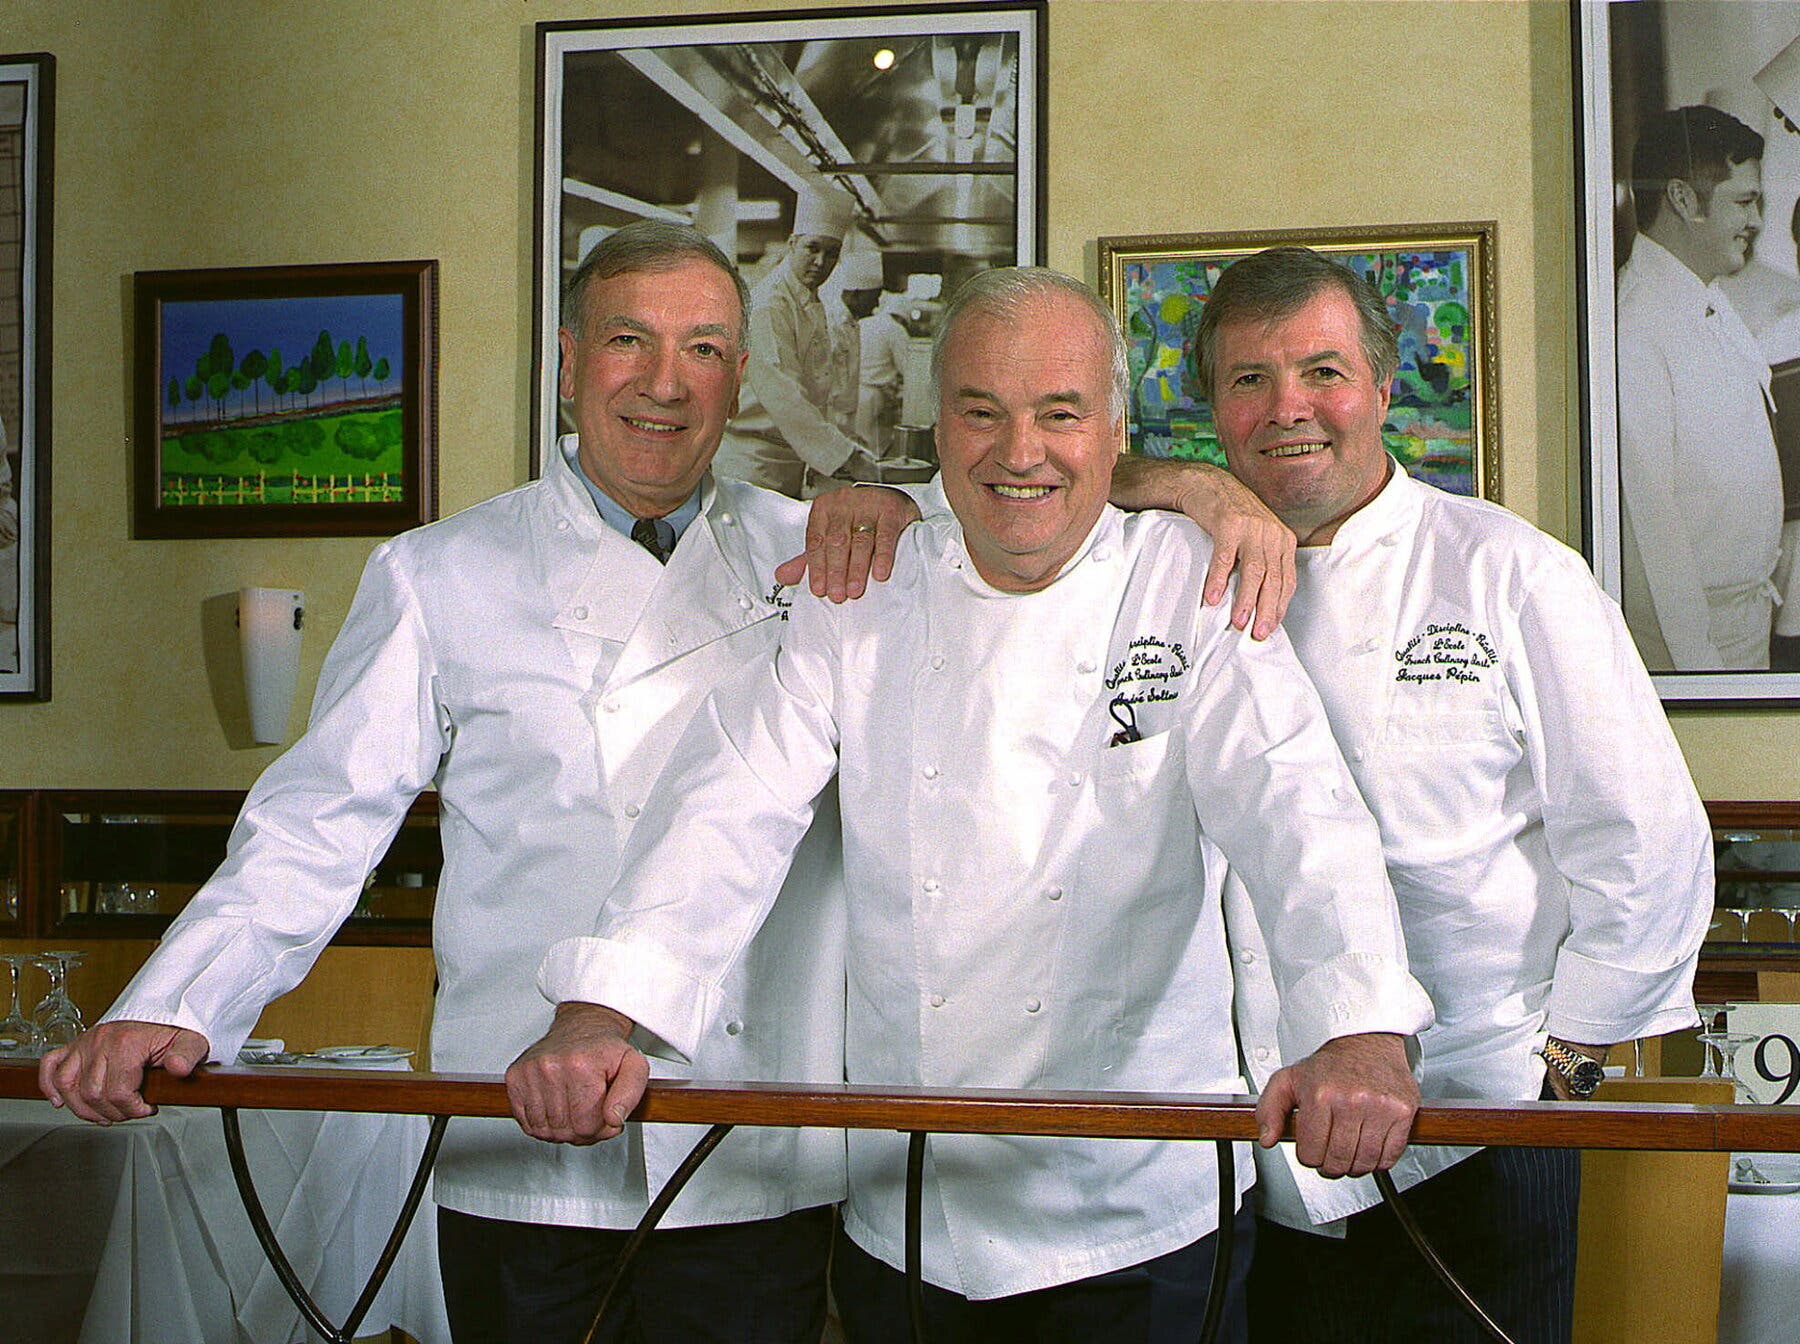 Sailhac, à esquerda, com os chefs André Soltner e Jacques Pépin, no French Culinary Institute da cidade de Nova York em 1999. O trio foi contratado como reitor da escola em 1982.Crédito...Jim Cooper/Associated Press